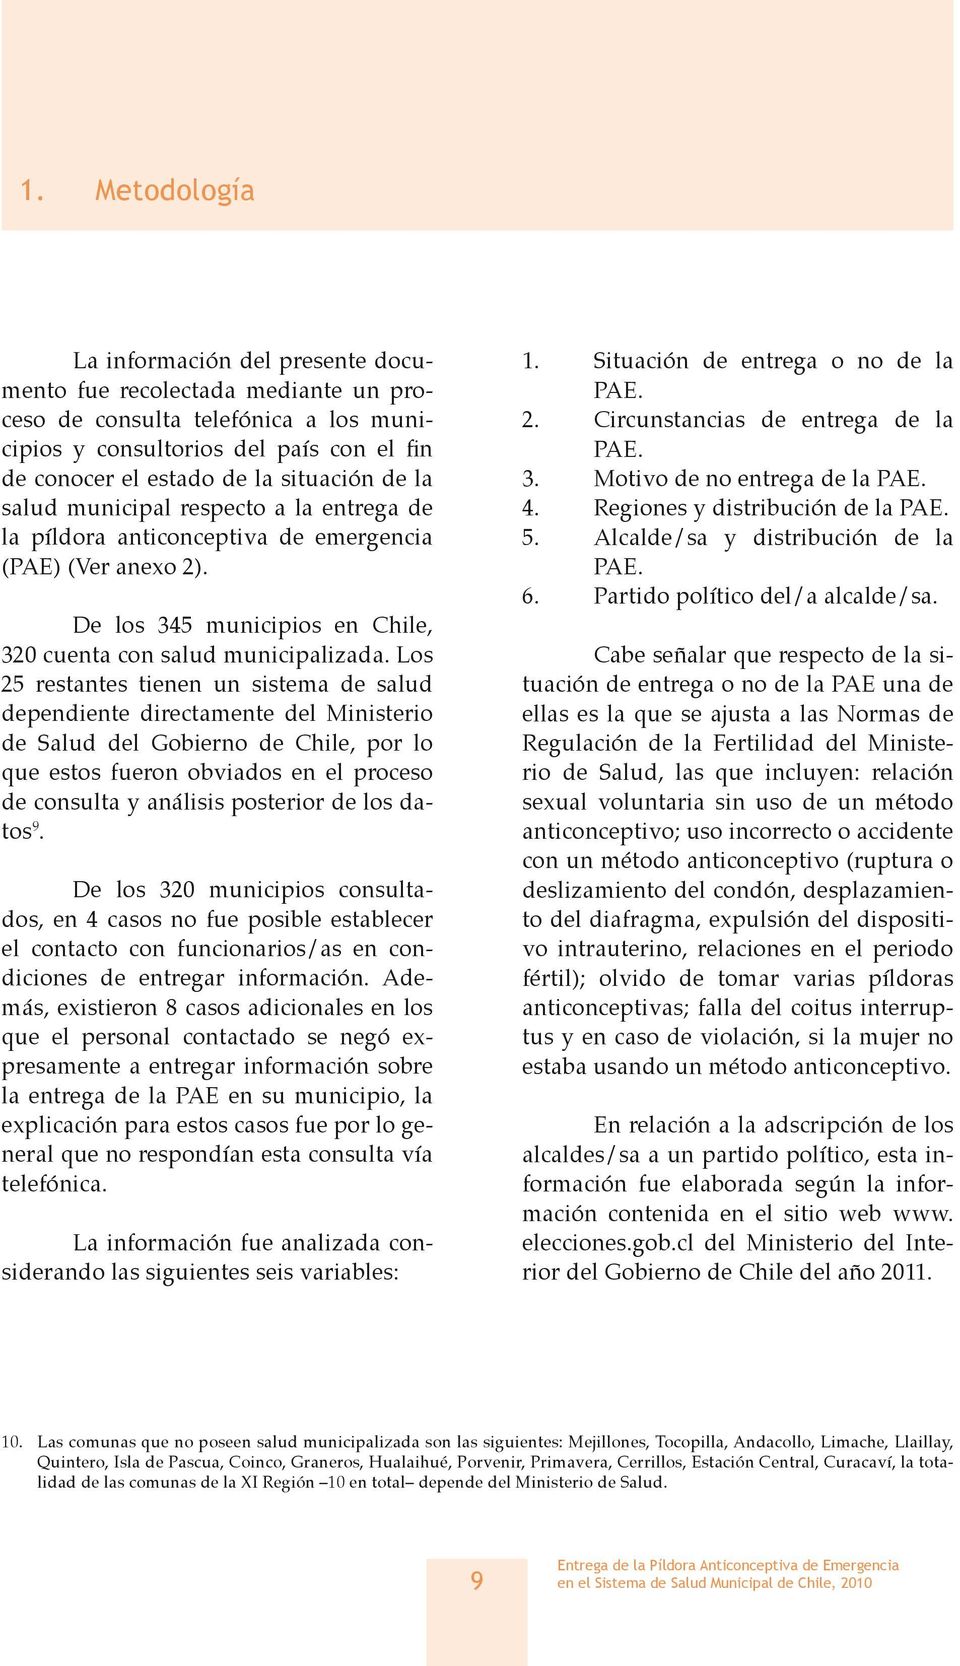 Los 25 restantes tienen un sistema de salud dependiente directamente del Ministerio de Salud del Gobierno de Chile, por lo que estos fueron obviados en el proceso de consulta y análisis posterior de